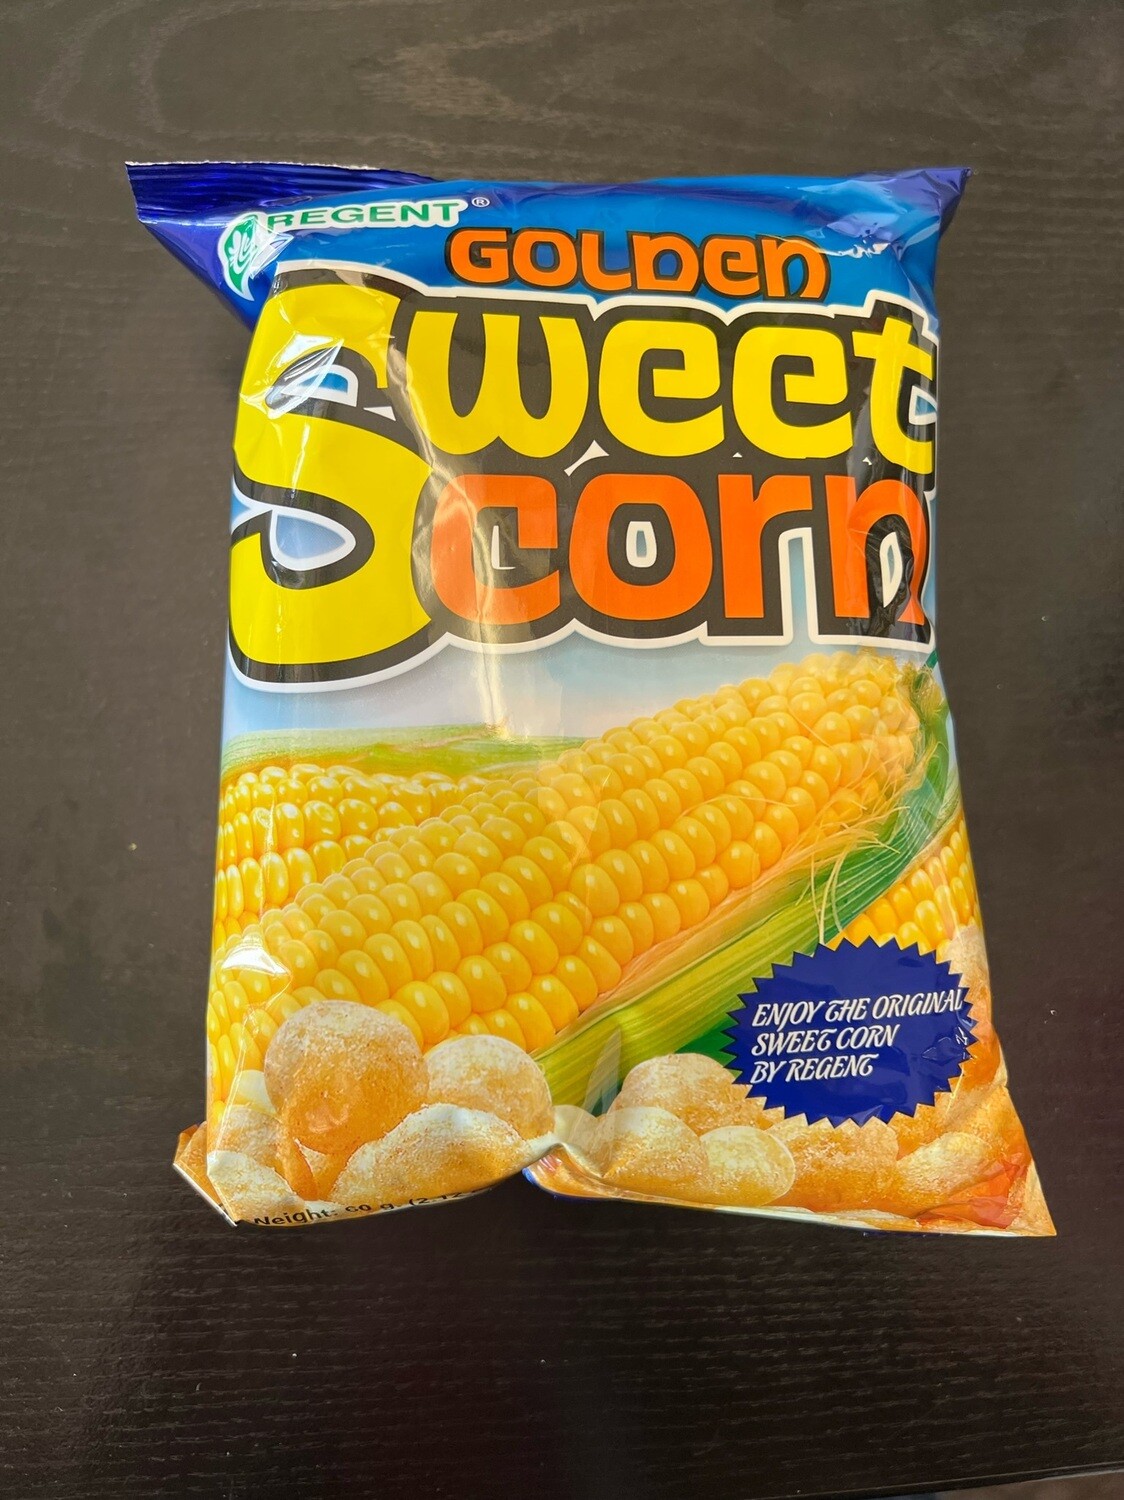 Regents Golden Sweet Corn